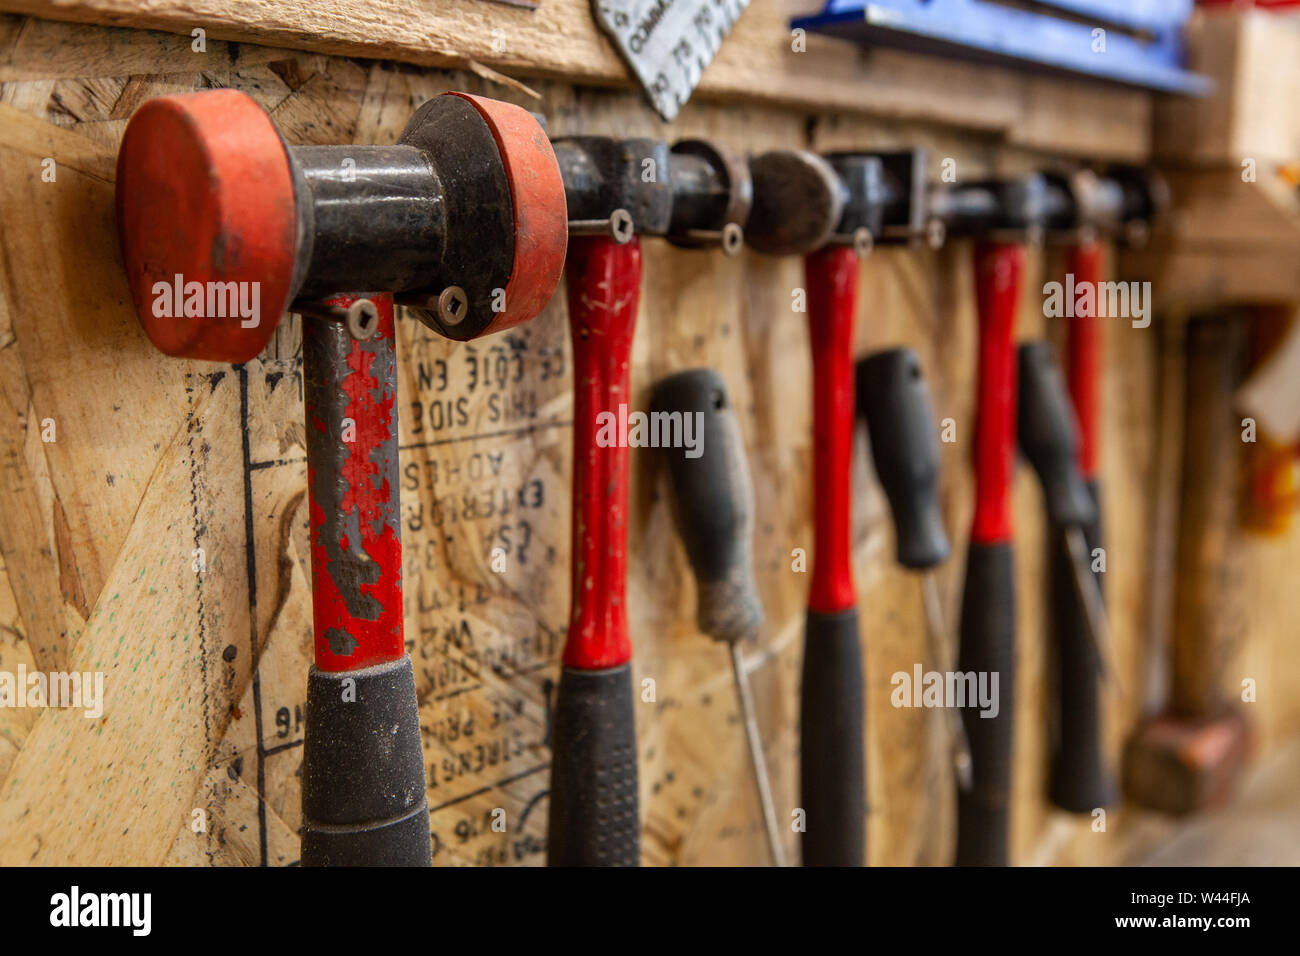 Eine Detailansicht auf einer Vielzahl von metallarbeiten Hammer und  Schlägel in einem Workshop. Verschiedene Größen und Stile hängen an  Schrauben für einfachen Zugang Stockfotografie - Alamy